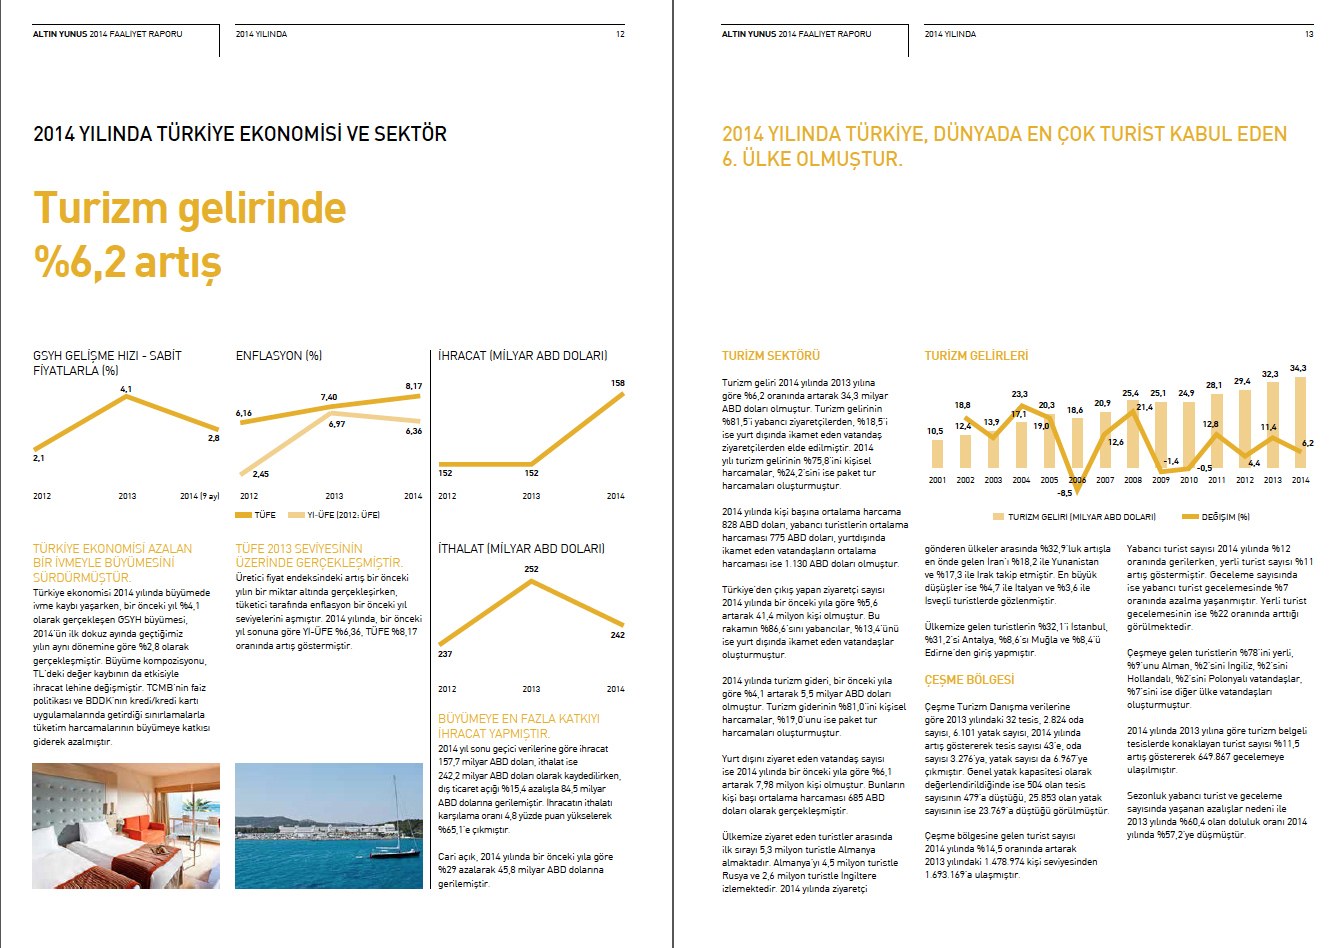 ALTIN YUNUS / 2014 Faaliyet Raporu / 2014 Annual Report